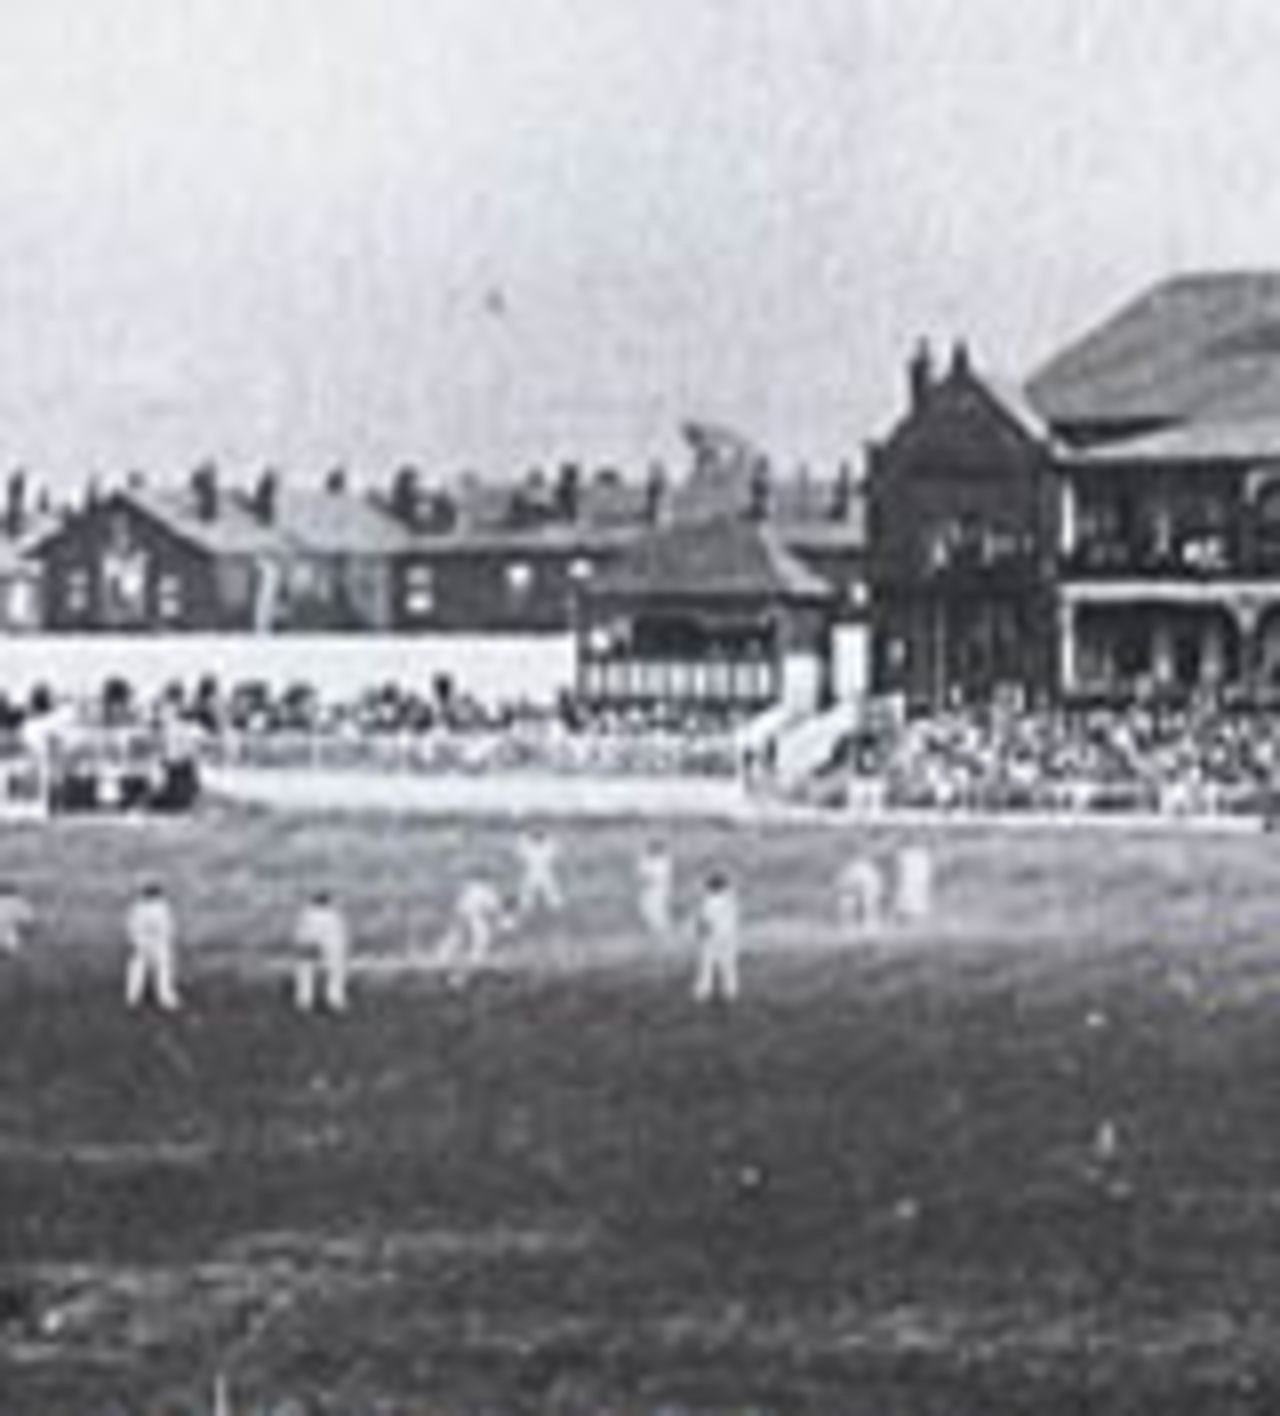 Bramall Lane panorama during 1902 Test